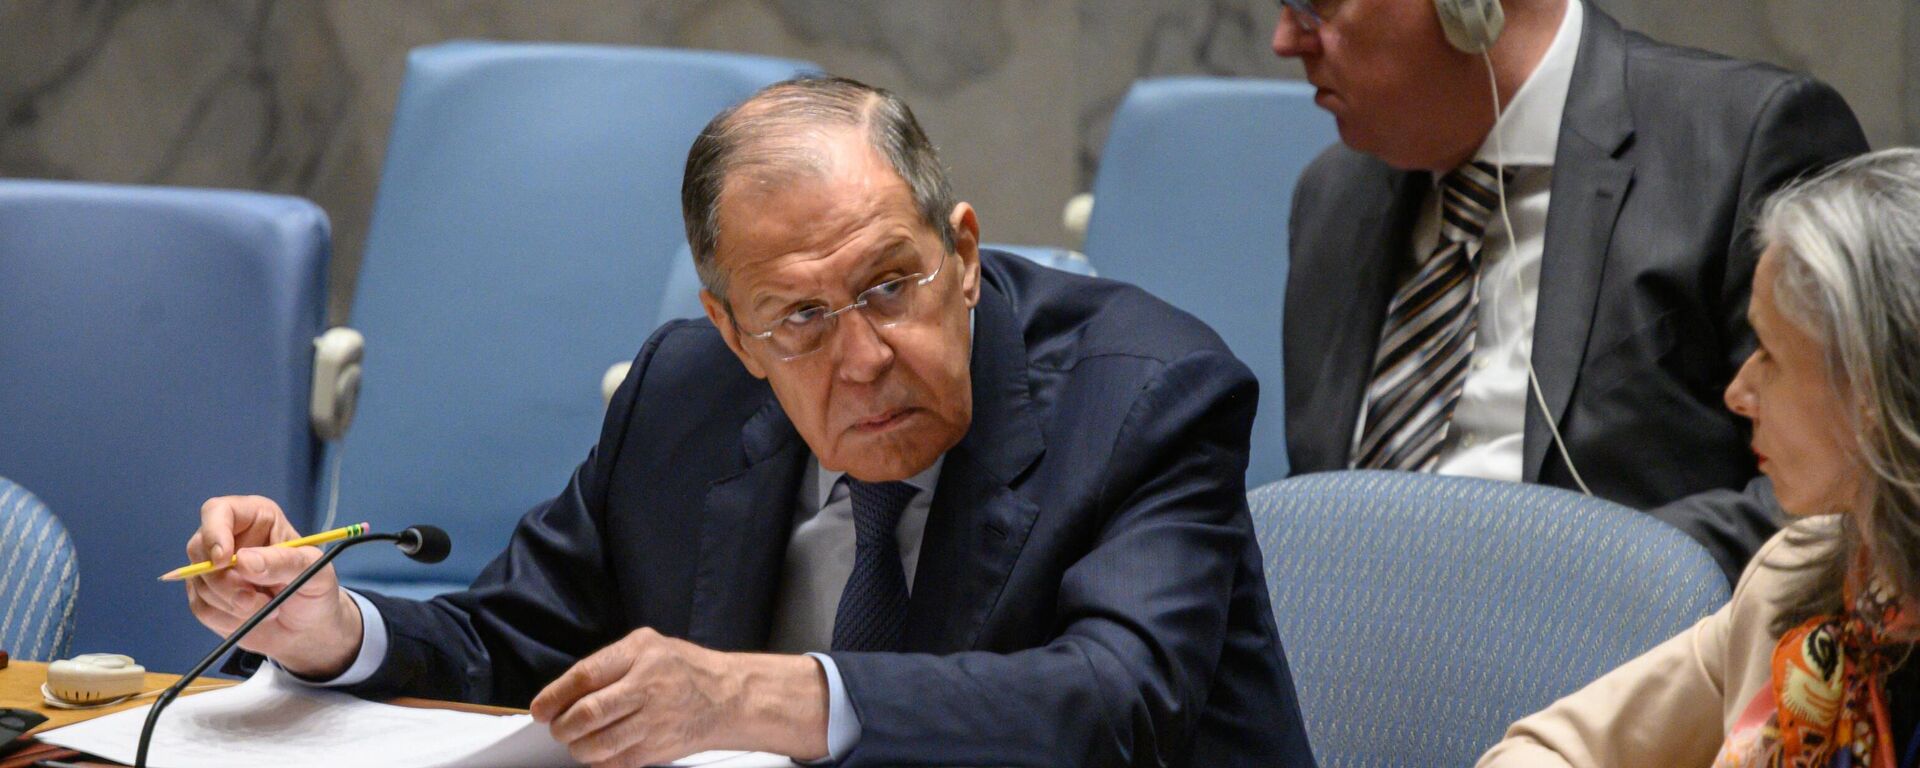 Serguéi Lavrov, el ministro de Asuntos Exteriores ruso, en una reunión del Consejo de Seguridad de la ONU sobre el conflicto palestino-israelí en la sede de la ONU en Nueva York el 25 de abril de 2023. - Sputnik Mundo, 1920, 25.04.2023